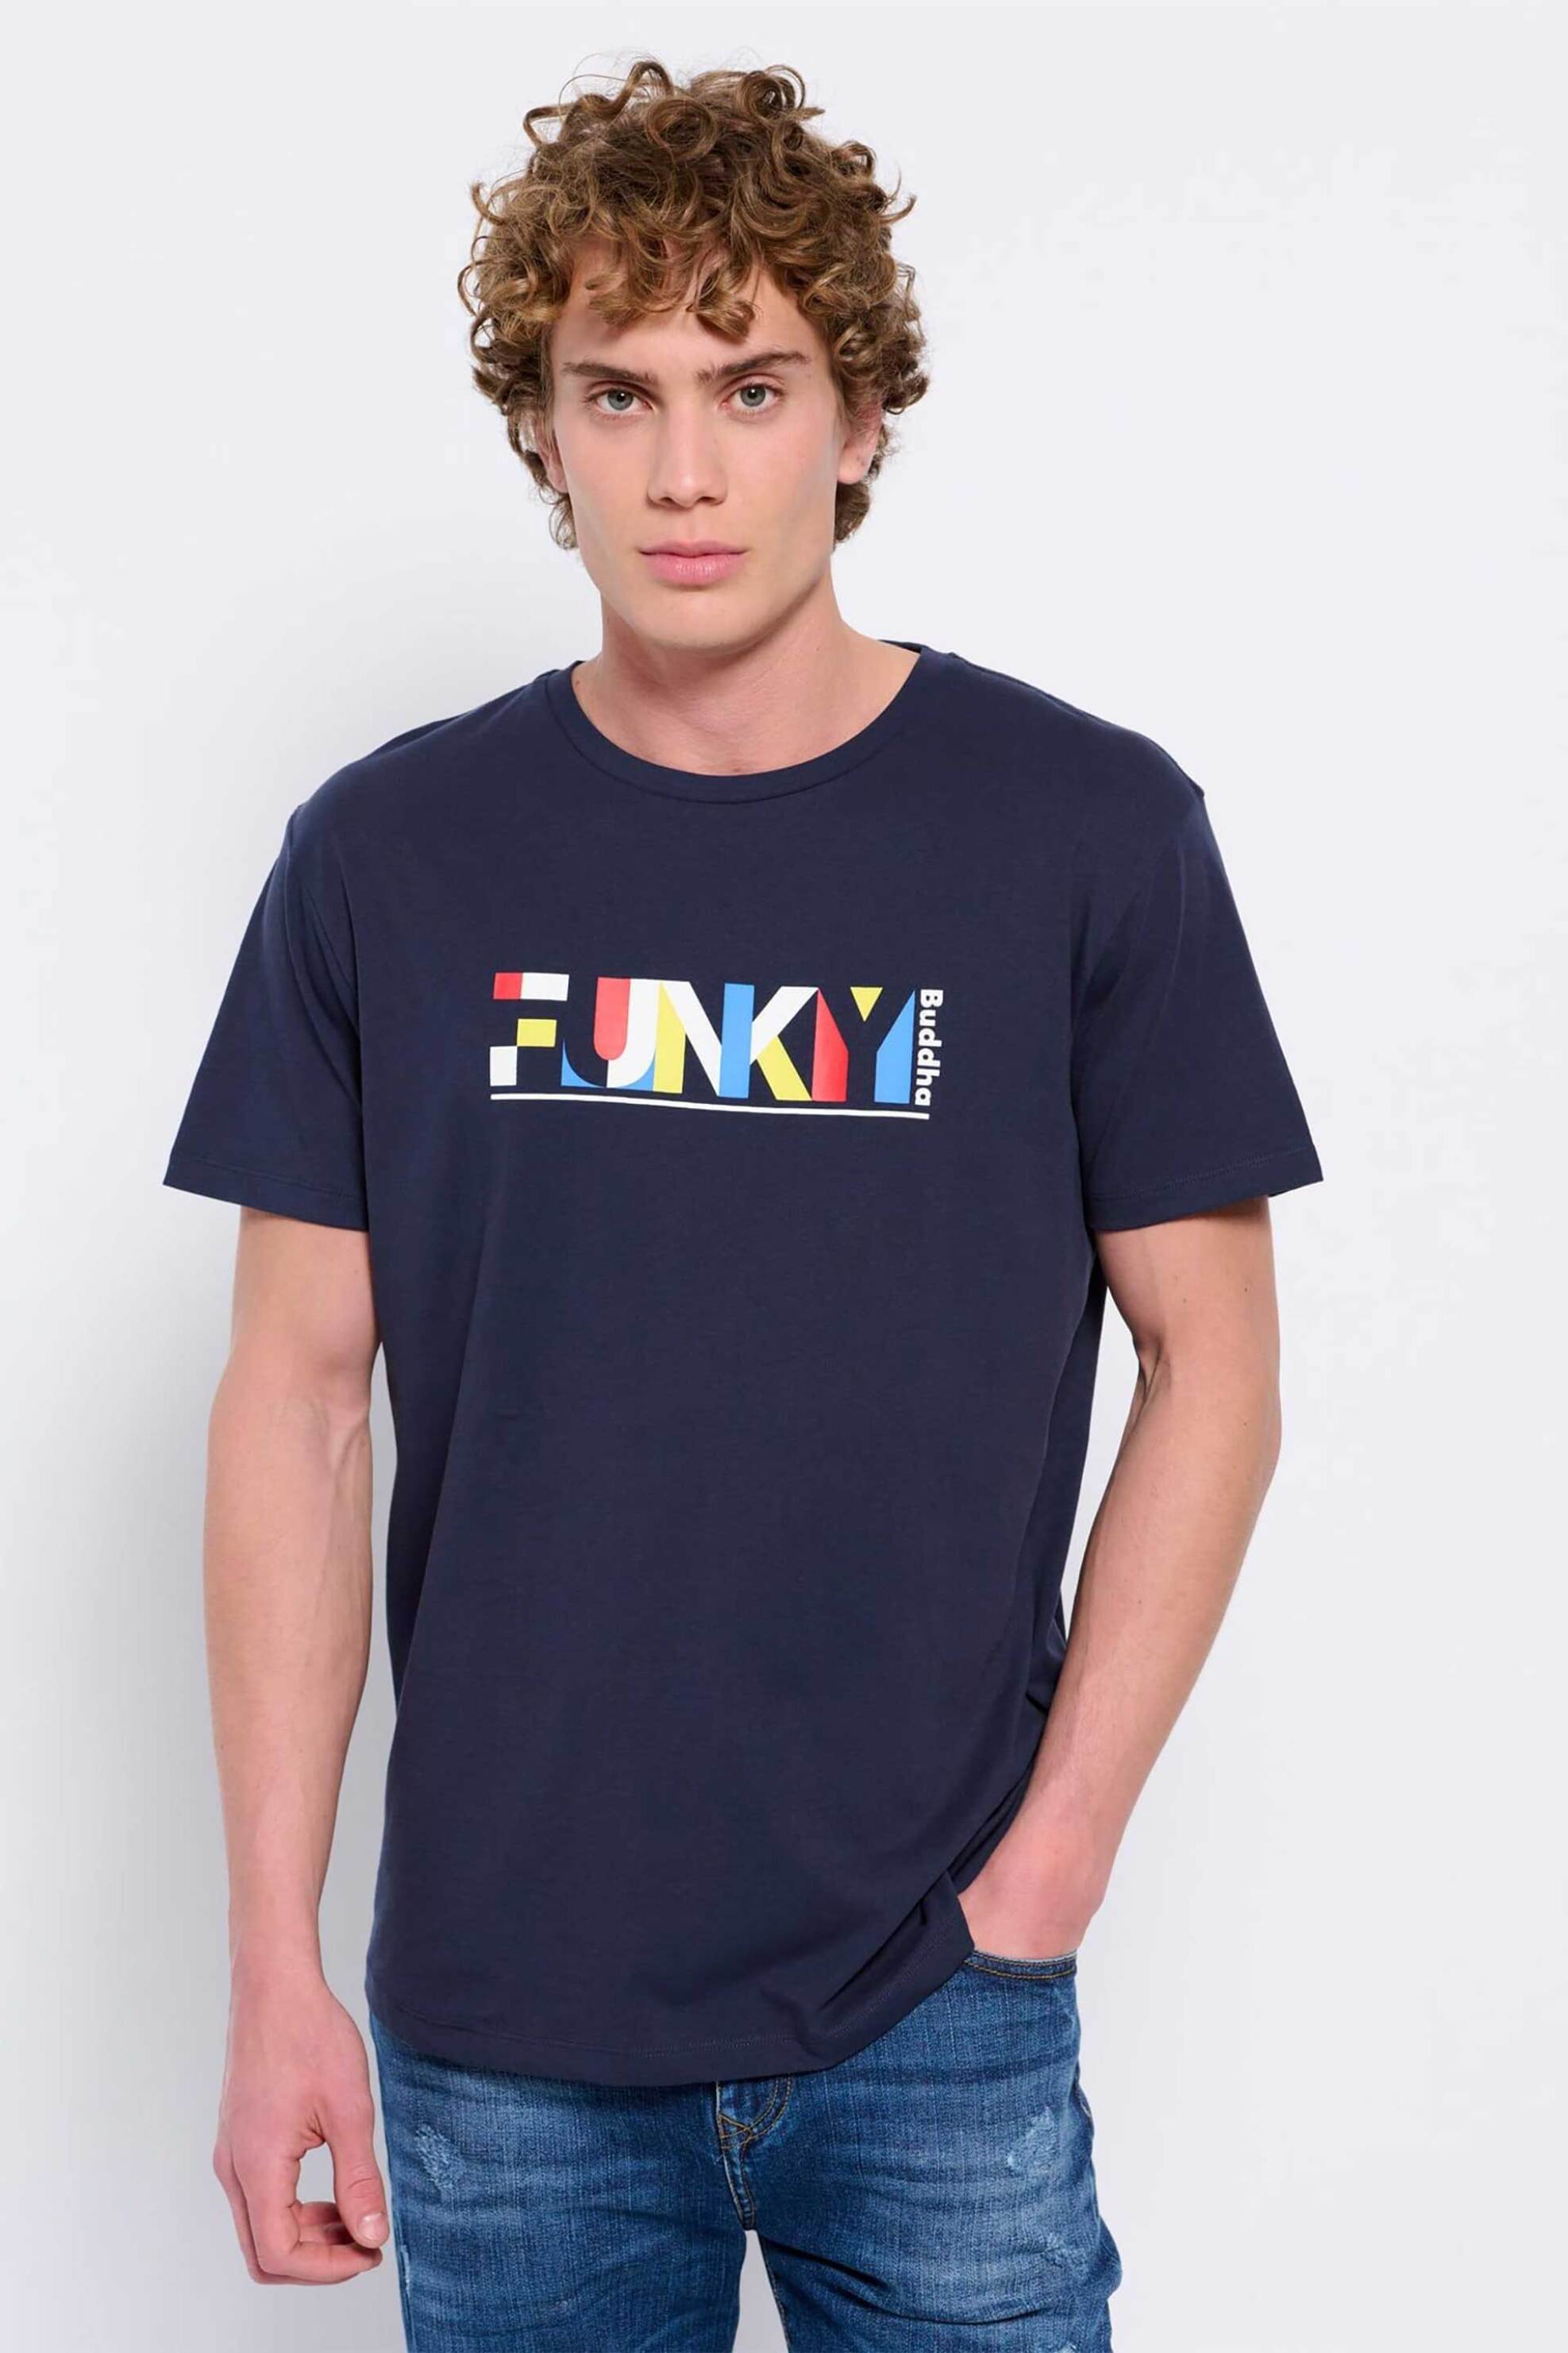 Ανδρική Μόδα > Ανδρικά Ρούχα > Ανδρικές Μπλούζες > Ανδρικά T-Shirts Funky Buddha ανδρικό βαμβακερό T-shirt μονόχρωμο με colorblocked logo print μπροστά - FBM007-024-04 Σκούρο Μπλε